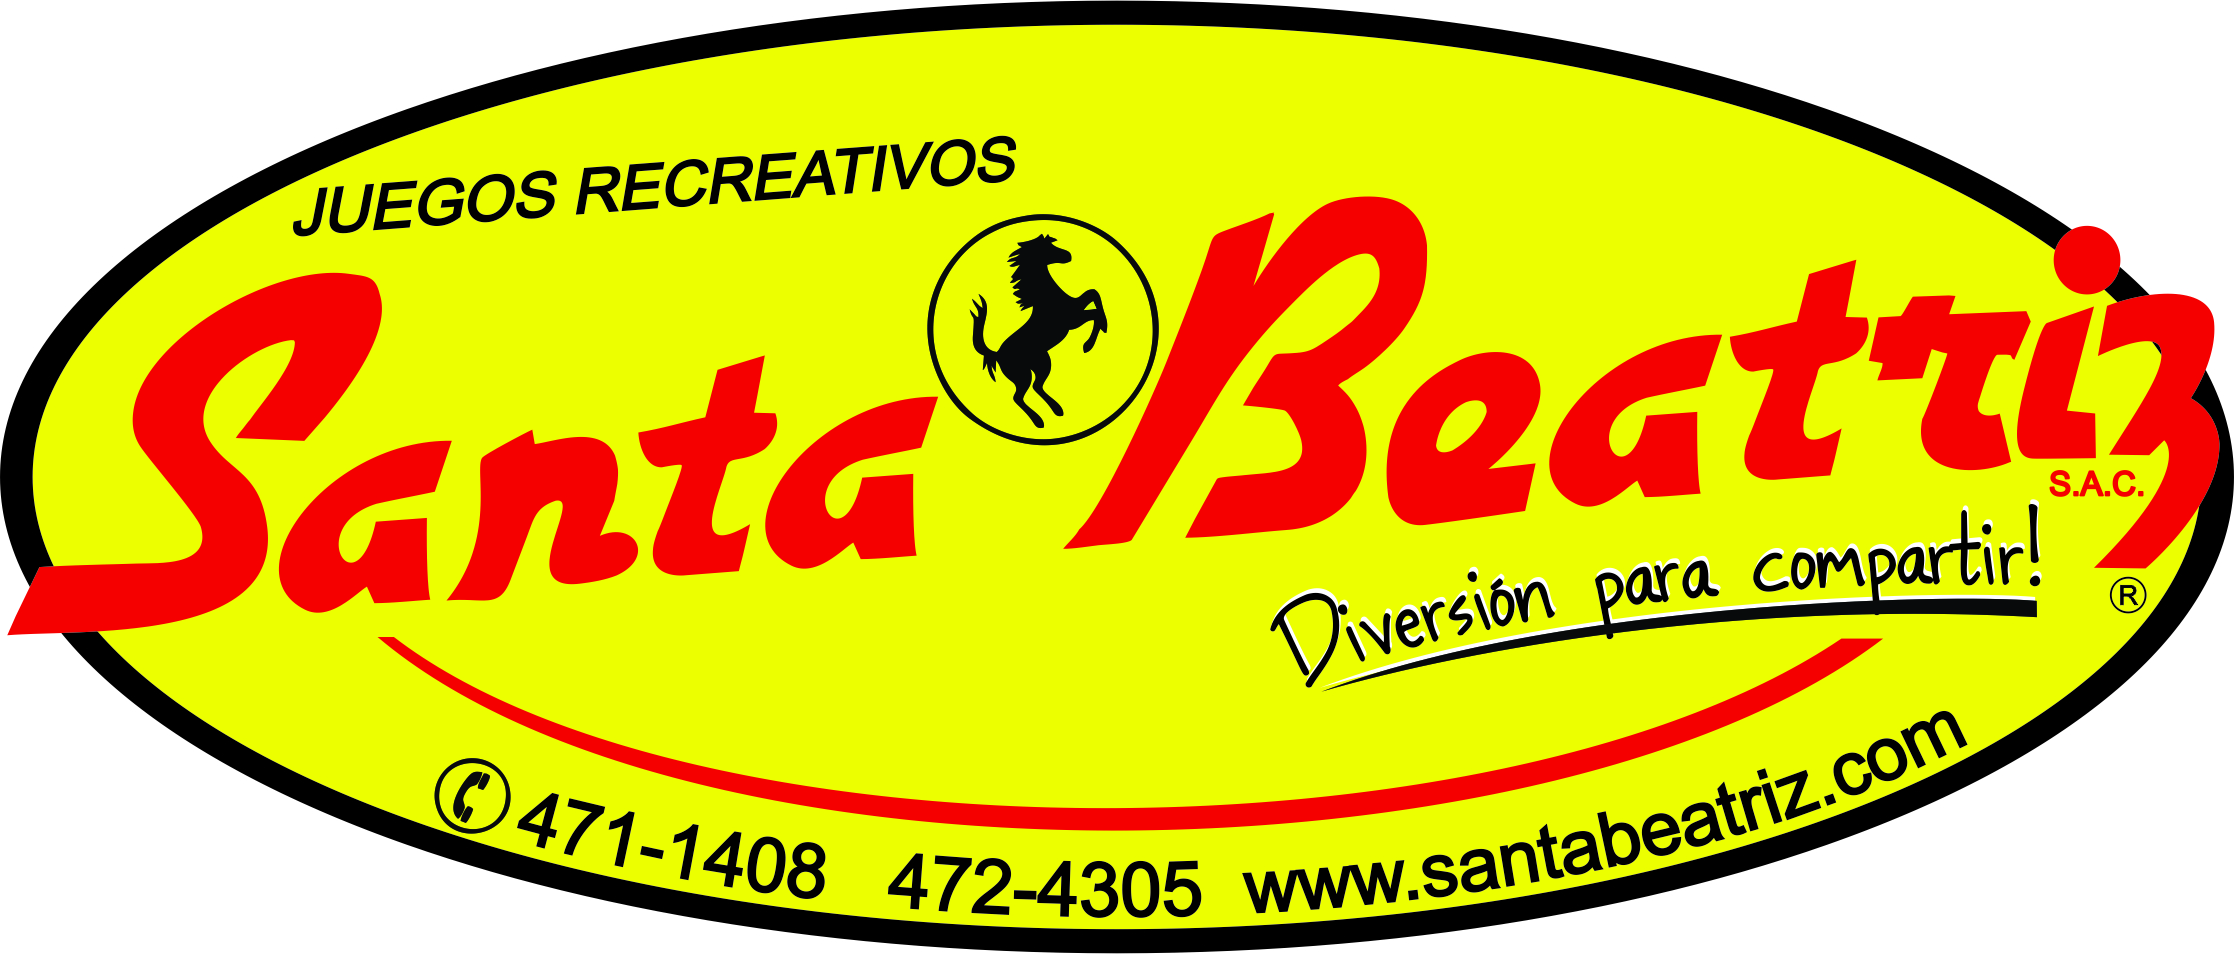 Juegos Recreativos Santa Beatriz logo